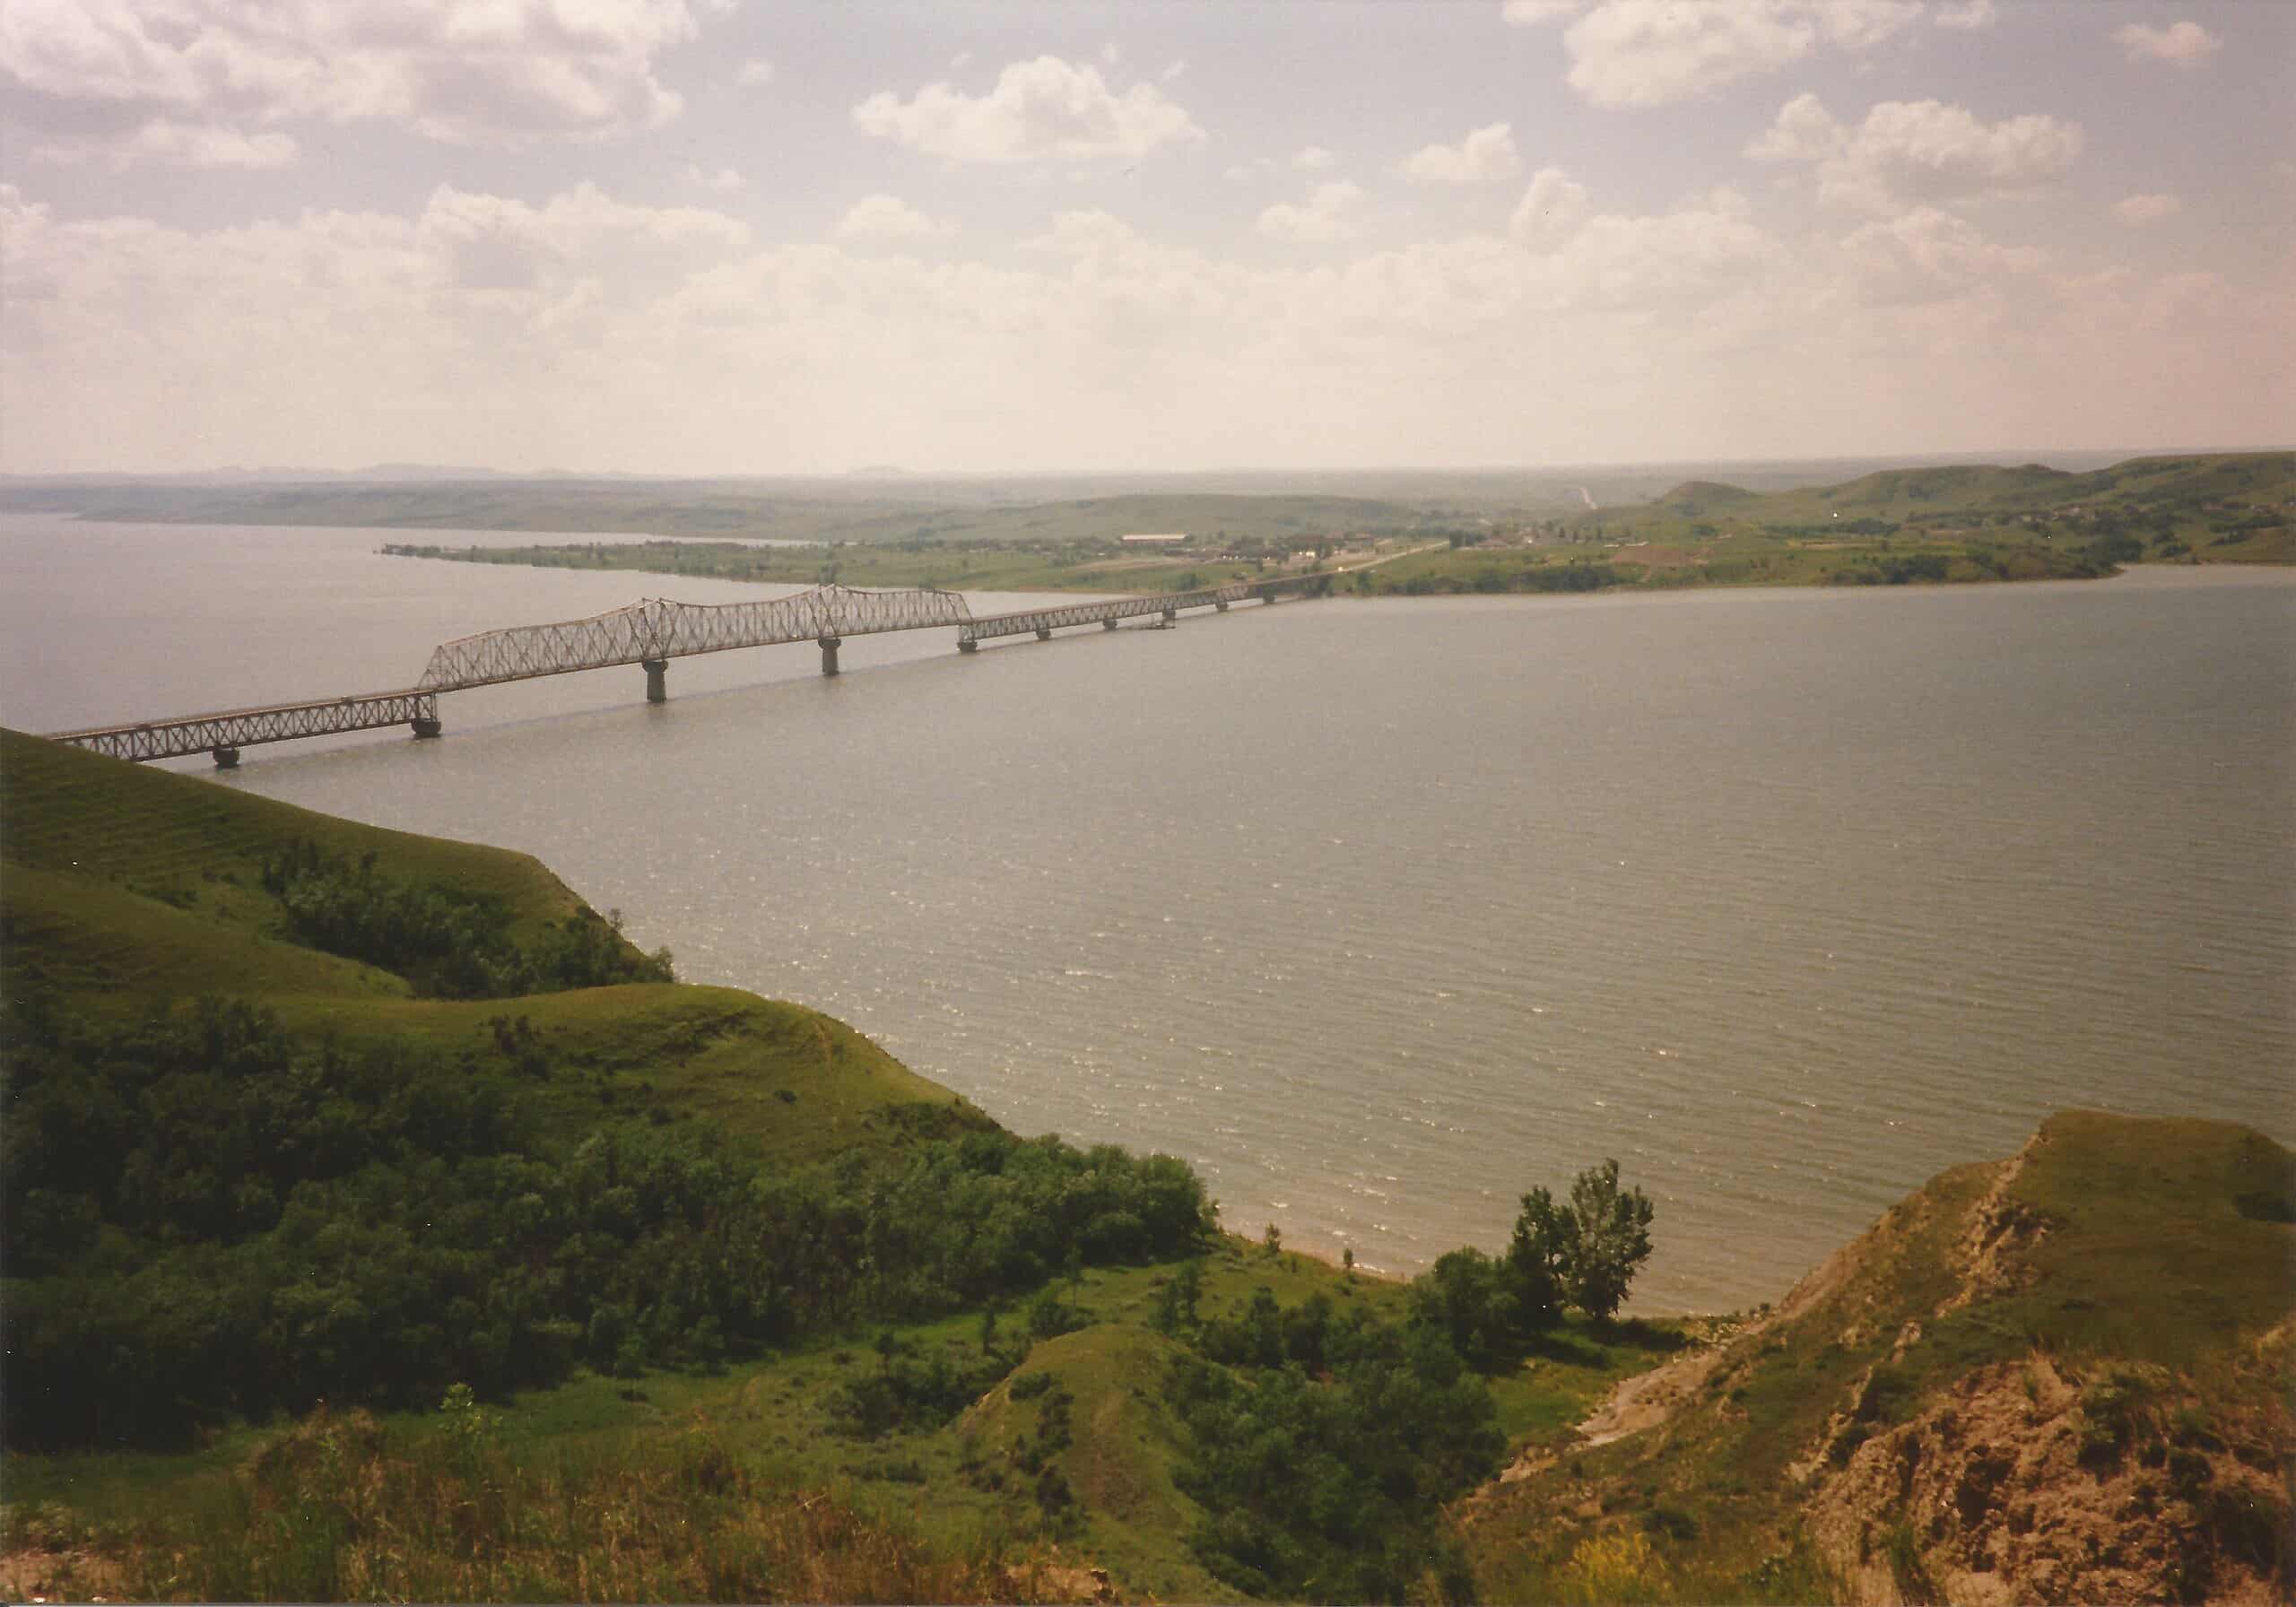 The old Four Bears Bridge spanning Lake Sakakawea/Missouri River, North Dakota